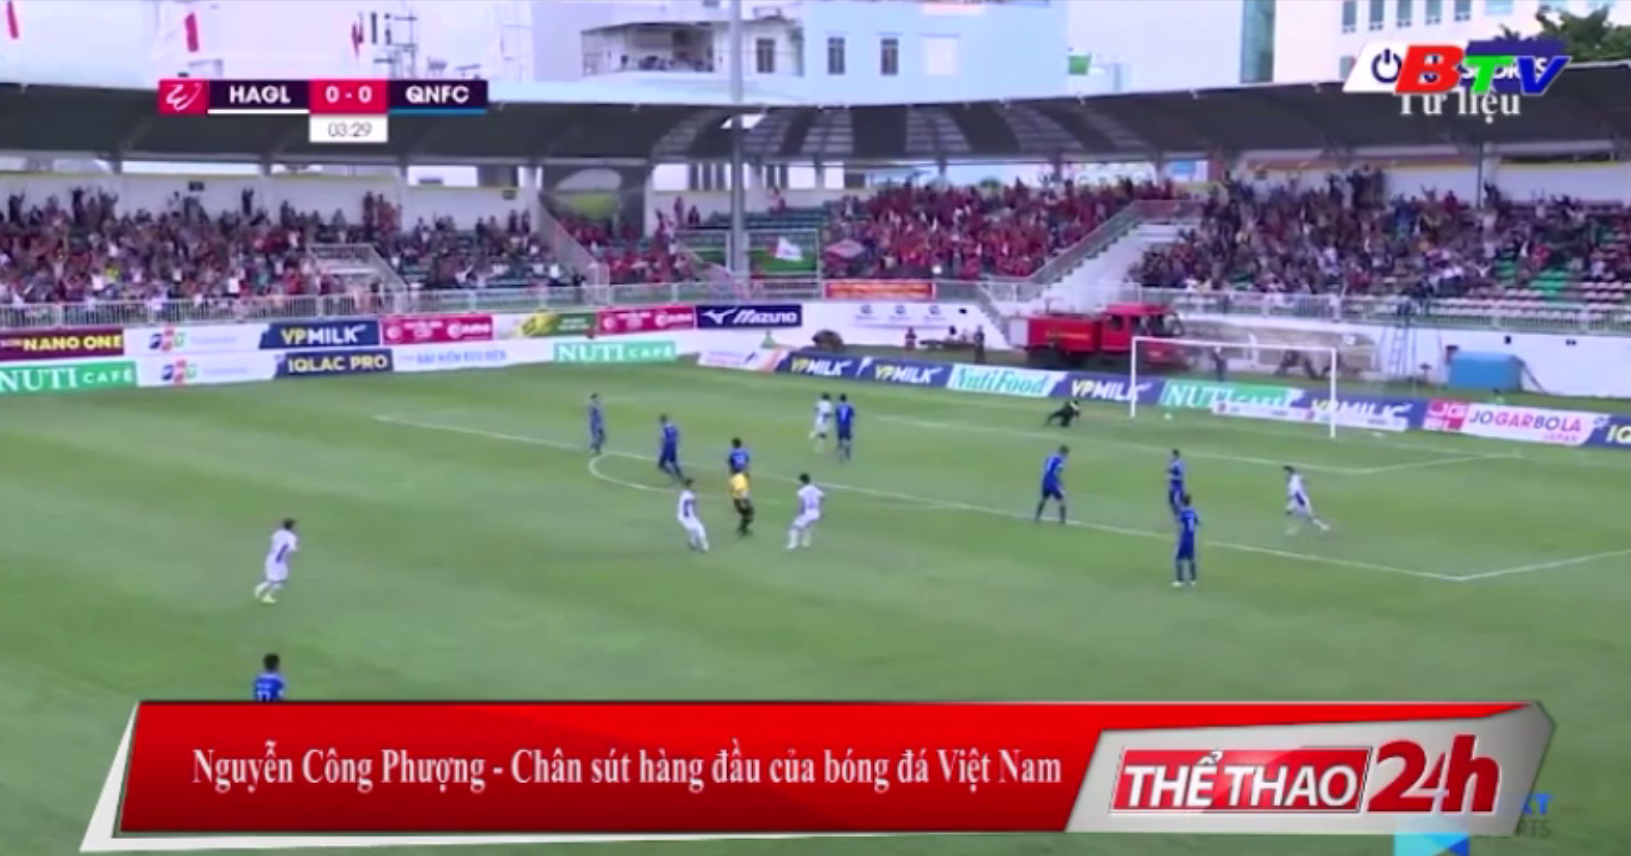 Nguyễn Công Phượng - Chân sút hàng đầu của bóng đá Việt Nam